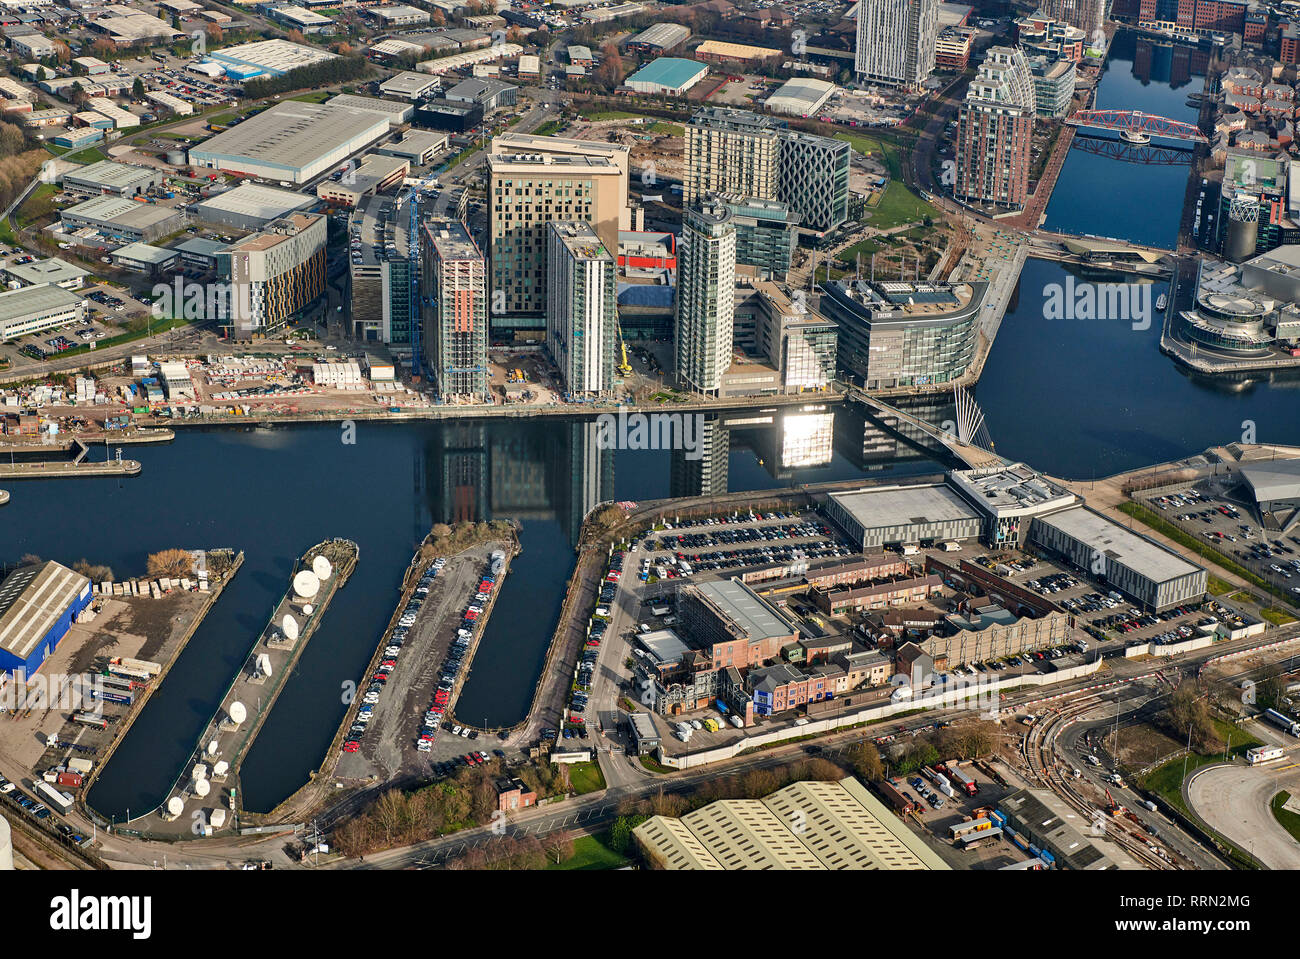 Una vista aérea de la ciudad de los medios de comunicación, Salford, Manchester, Inglaterra, Reino Unido. Foto de stock